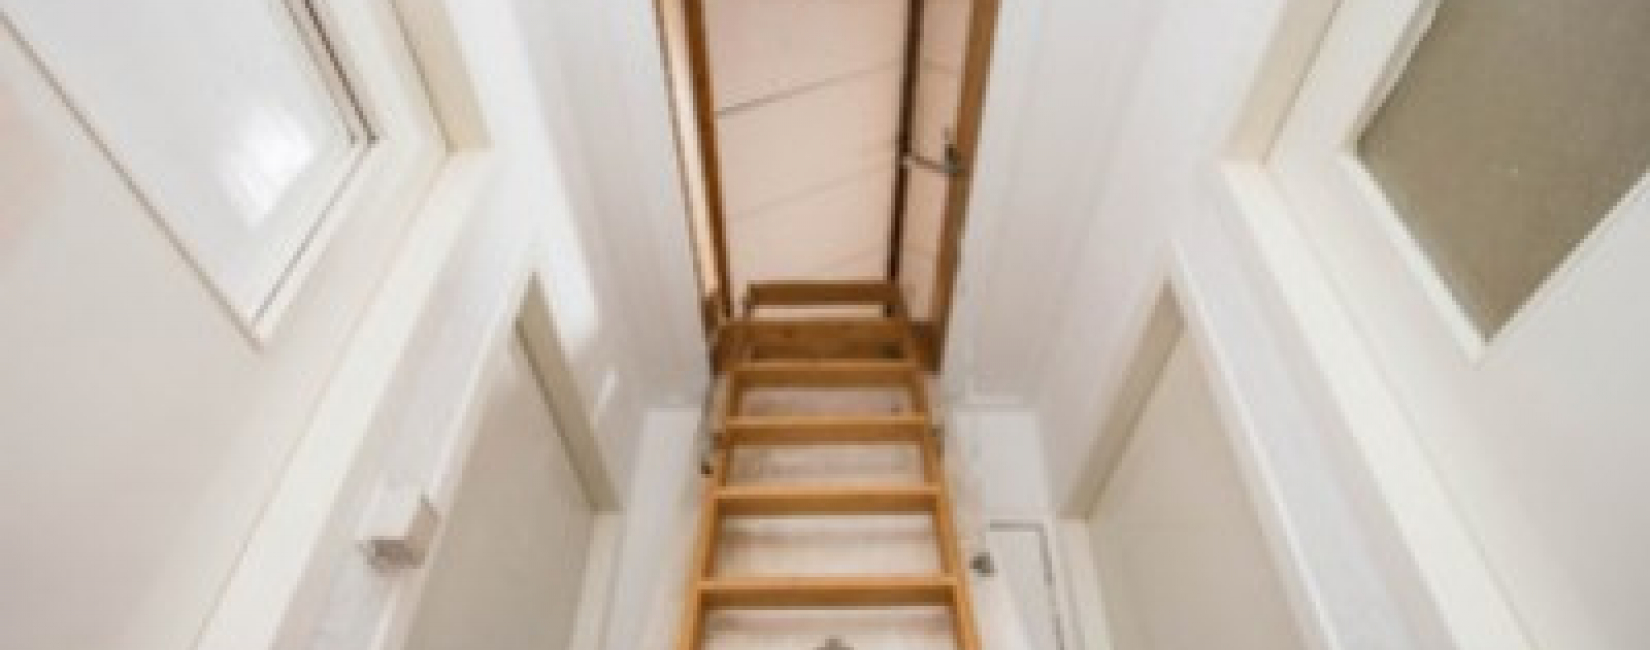 Jak ocieplić schody strychowe?